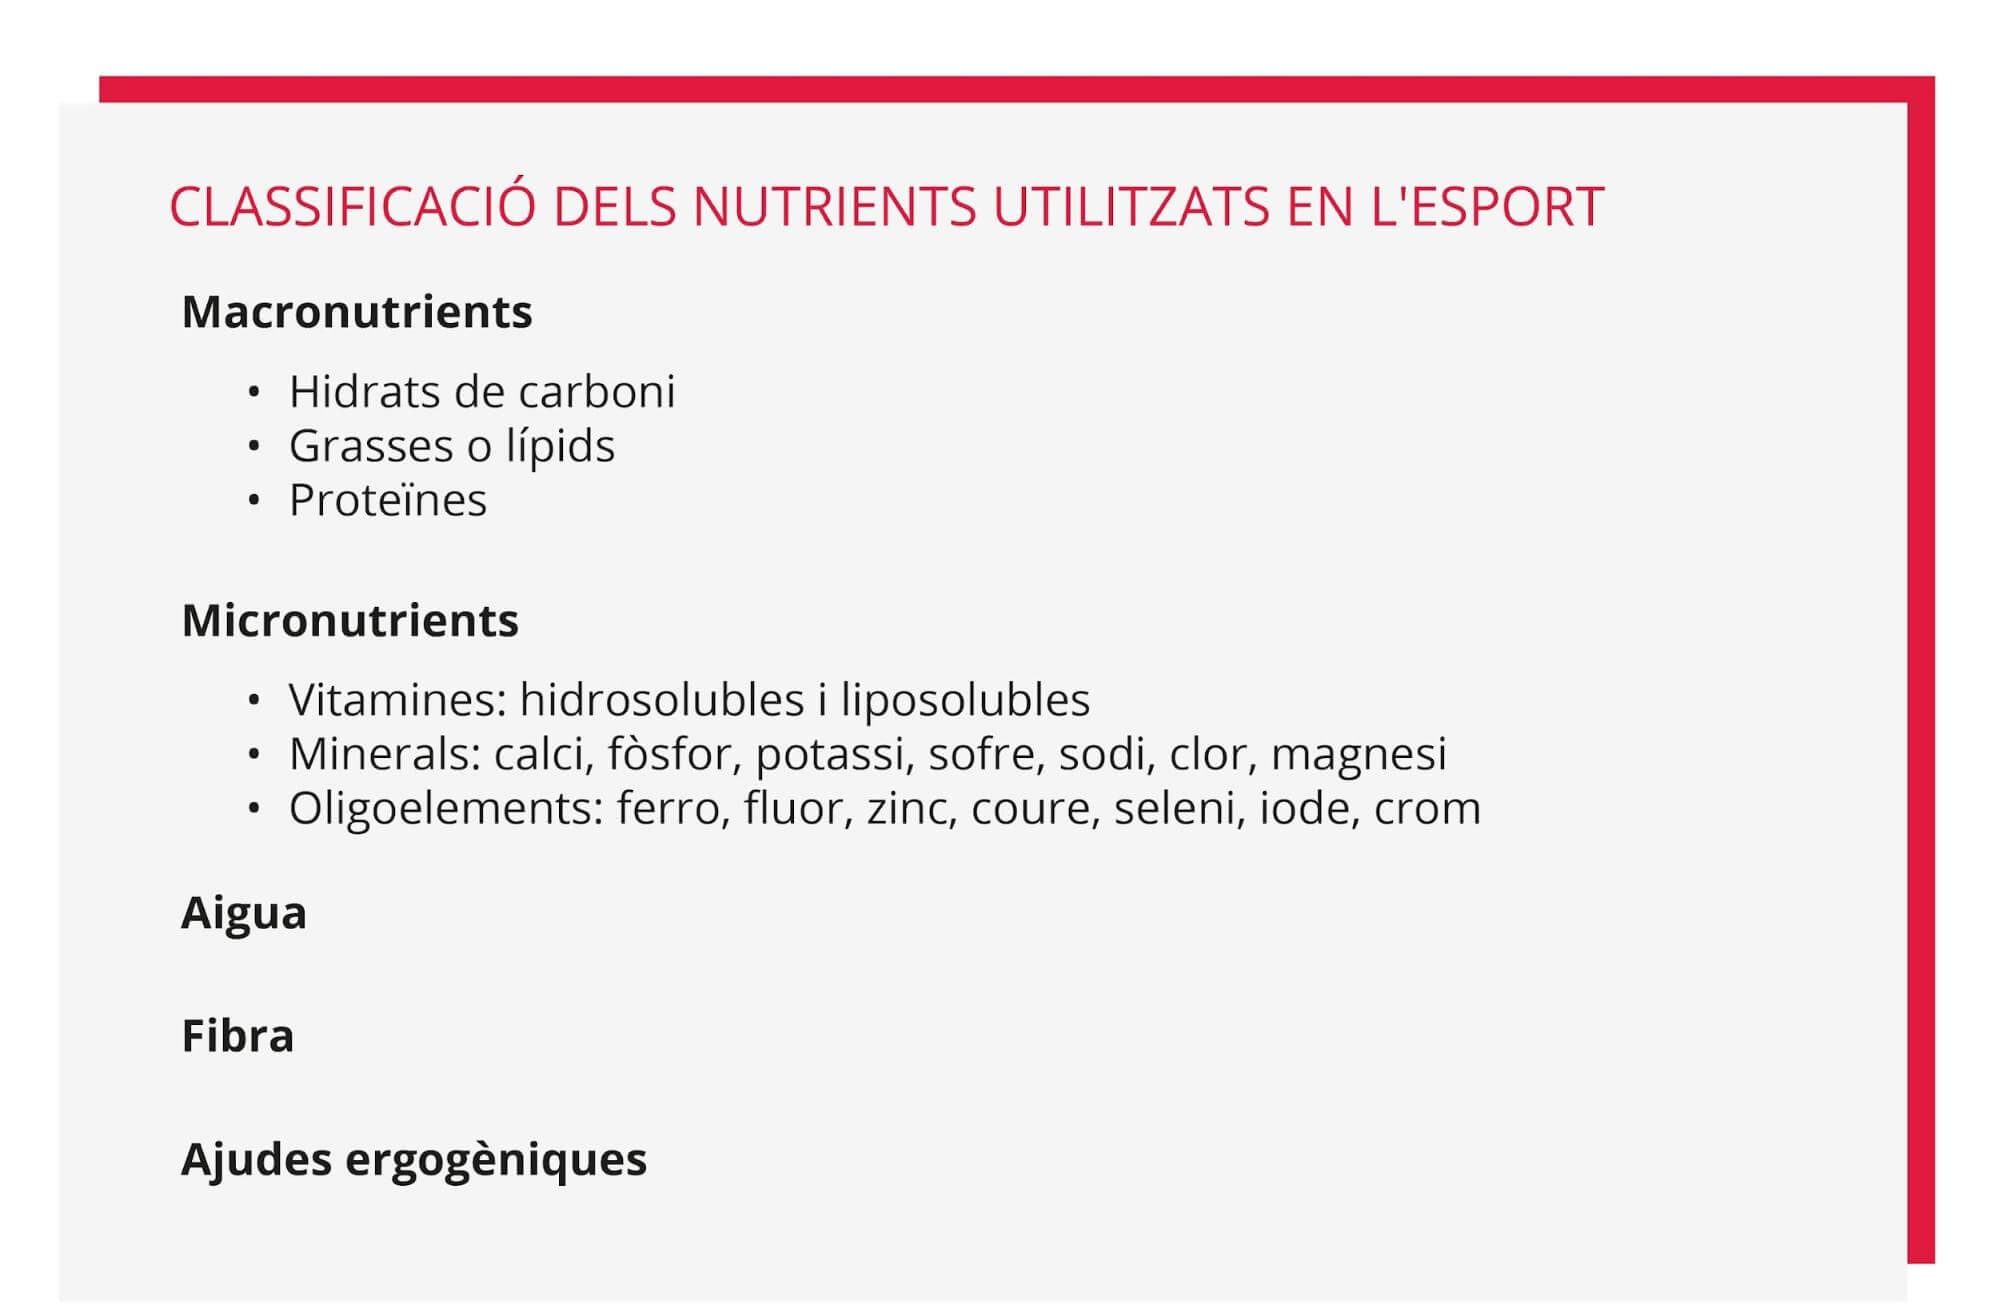 Classificació dels nutrients utilitzats en esport.